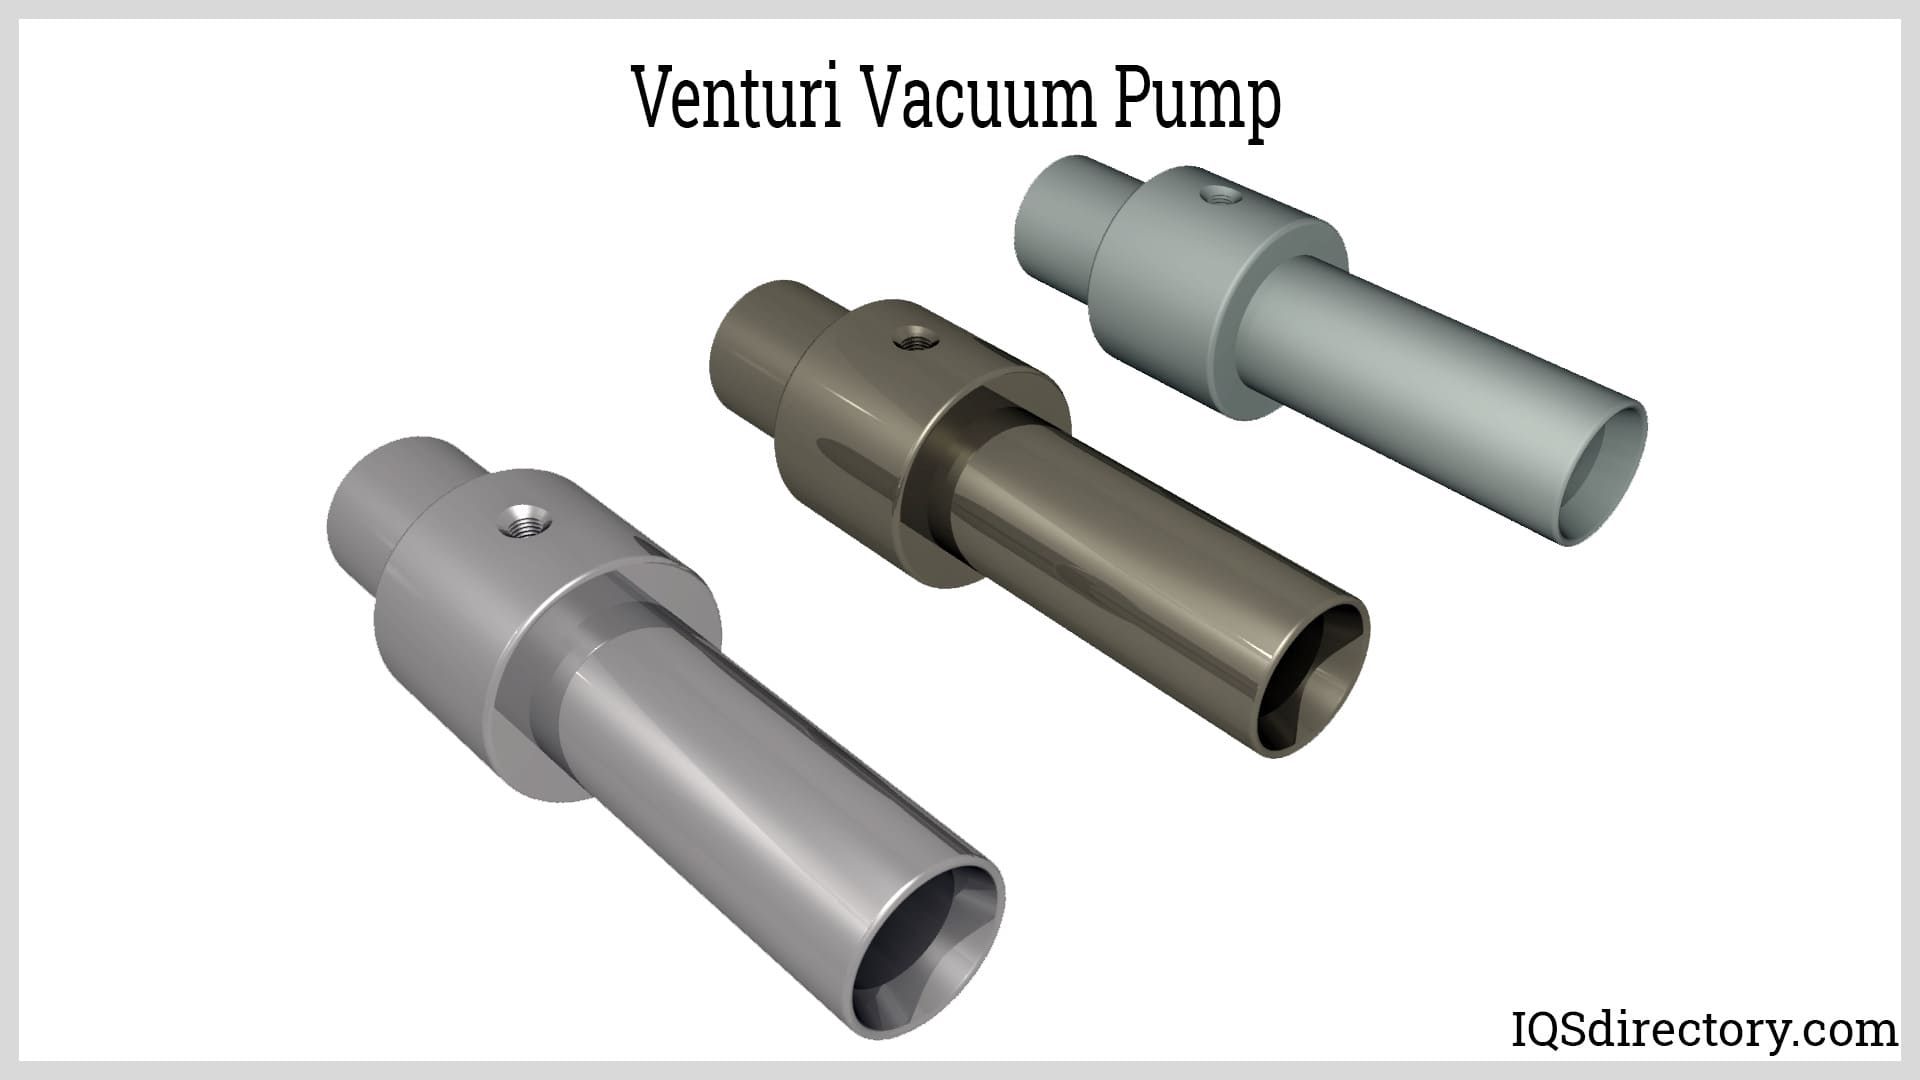 Venturi Vacuum Pumps